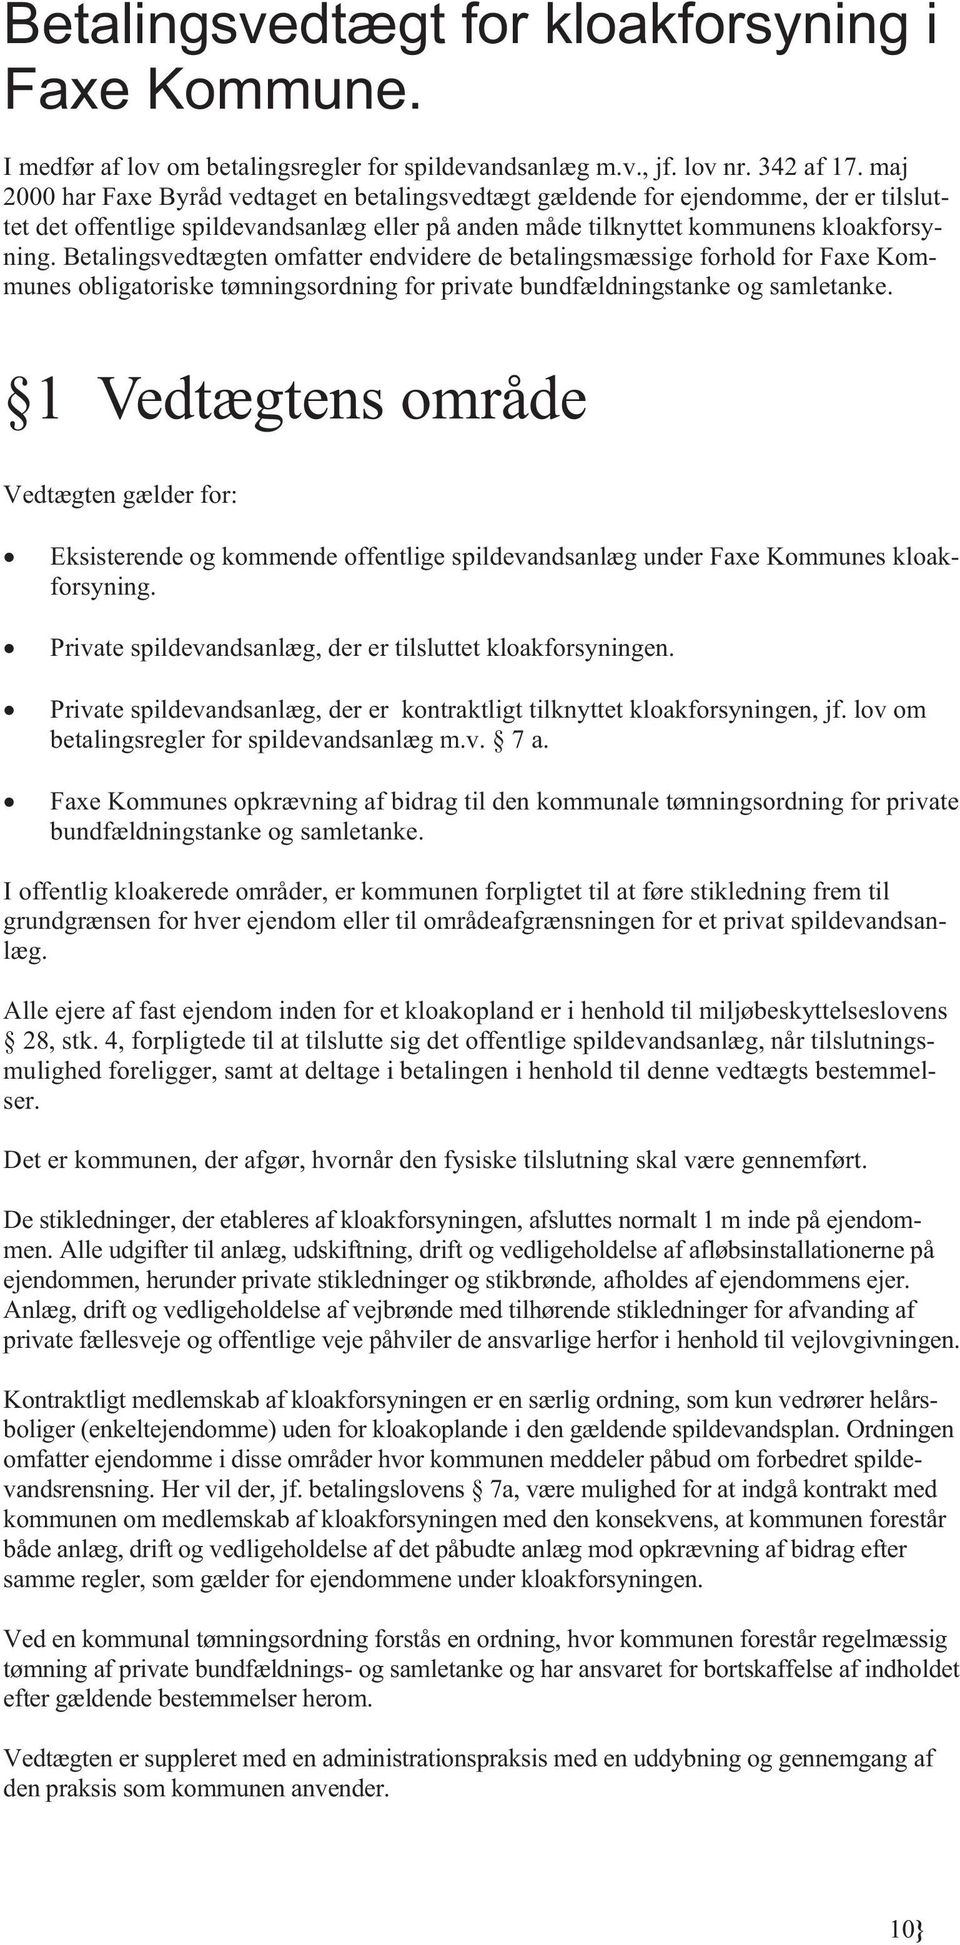 Betalingsvedtægten omfatter endvidere de betalingsmæssige forhold for Faxe Kommunes obligatoriske tømningsordning for private bundfældningstanke og samletanke.